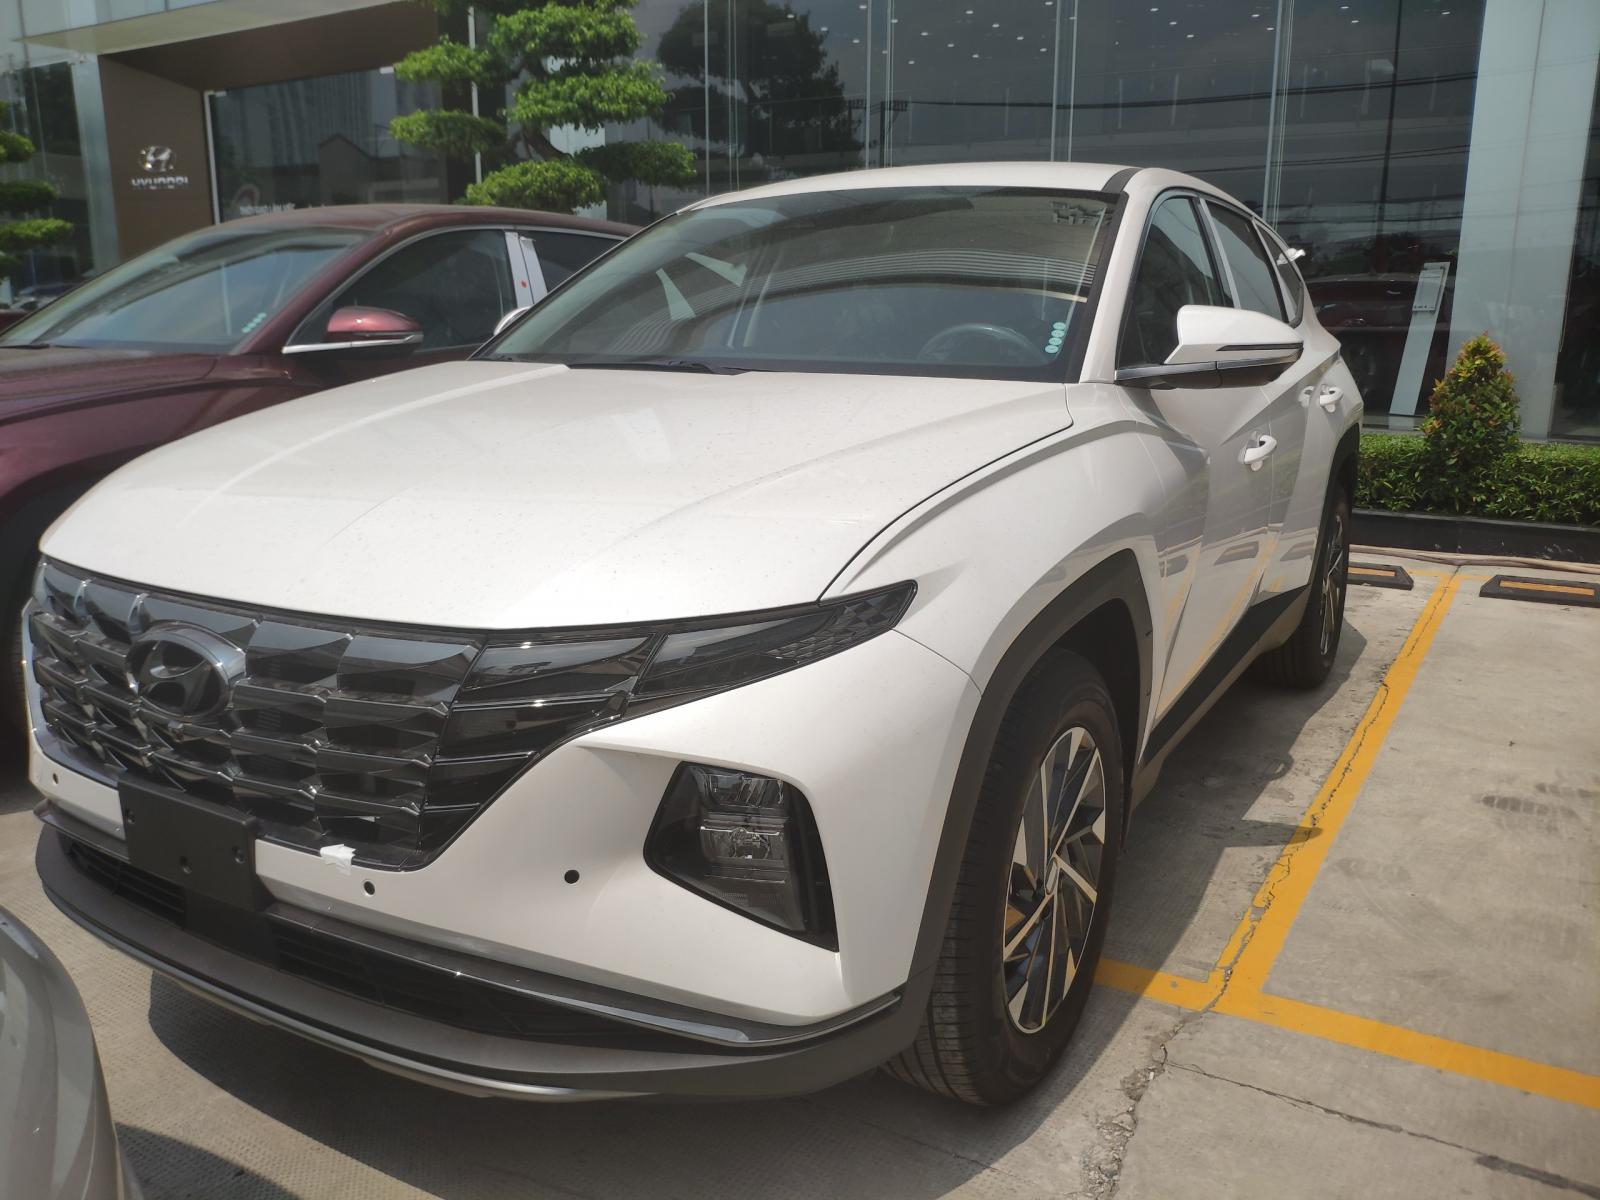 Hyundai Tucson 2.0 ĐẶC BIỆT 2022 - BÁN TUCSON ĐẶC BIỆT, GIÁ ƯU ĐÃI LÊN 40 TRIỆU. FULL PHỤ KIỆN